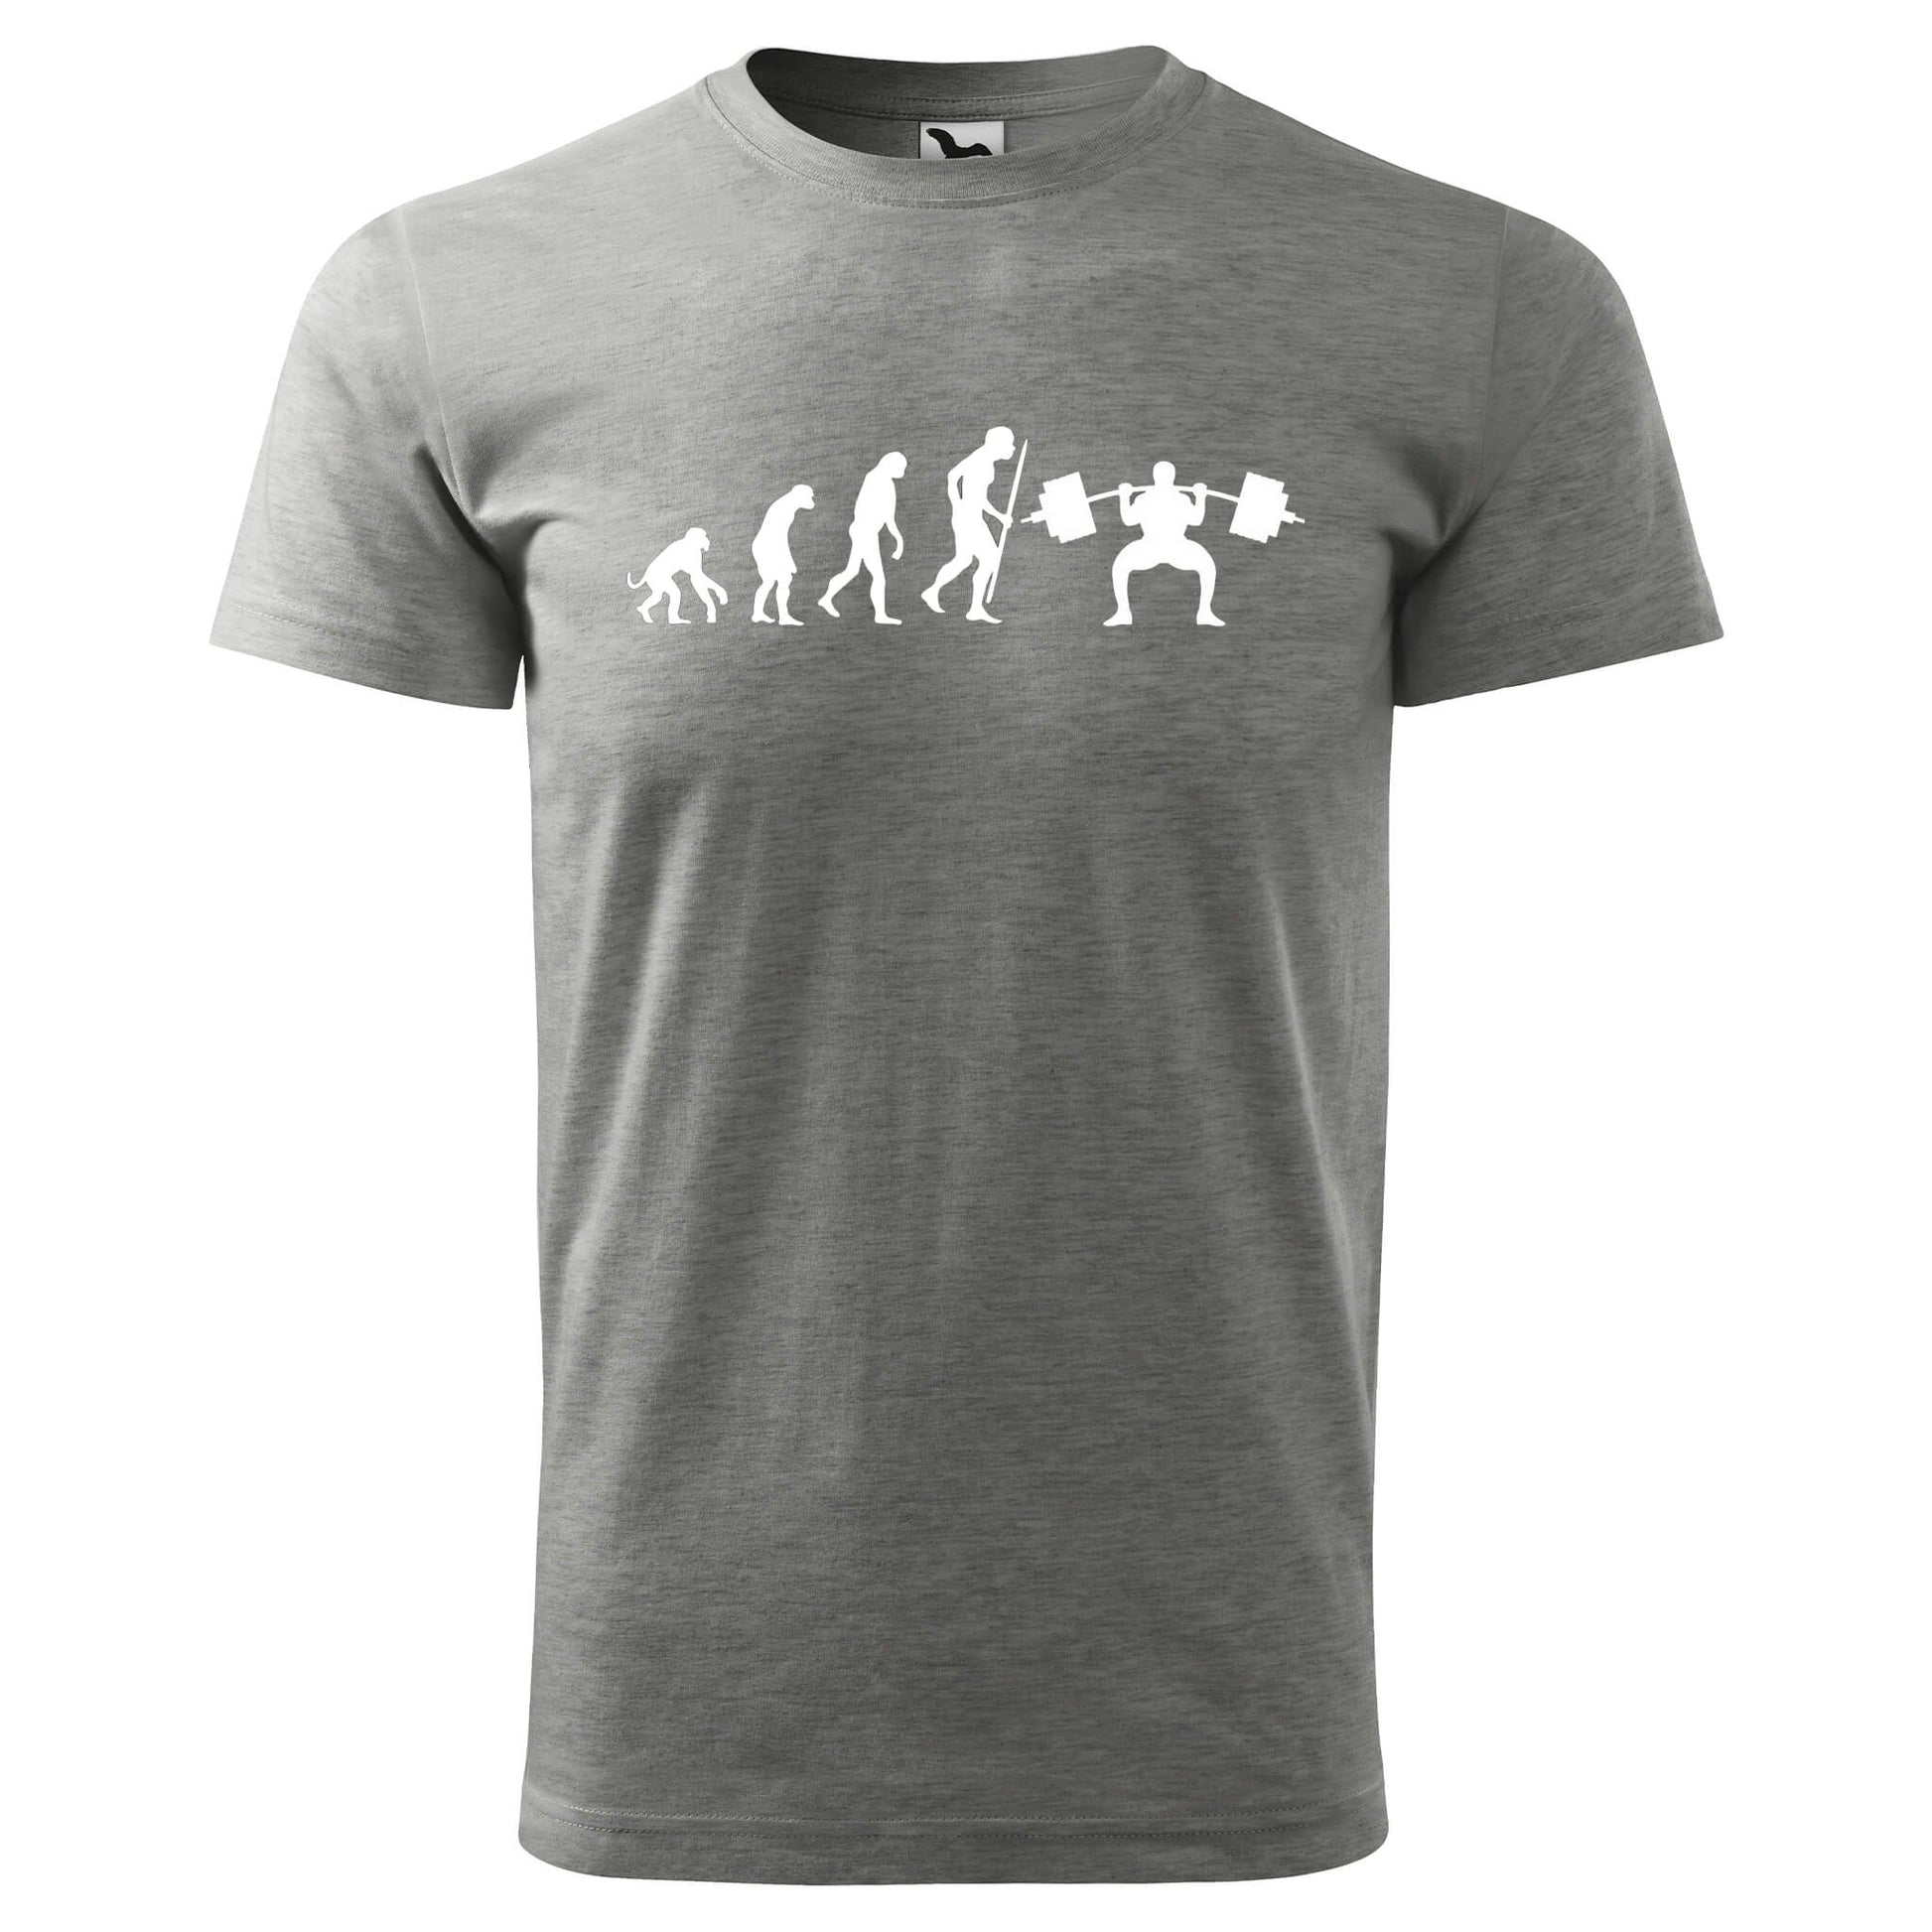 T-shirt - Evolution - Fitness - rvdesignprint